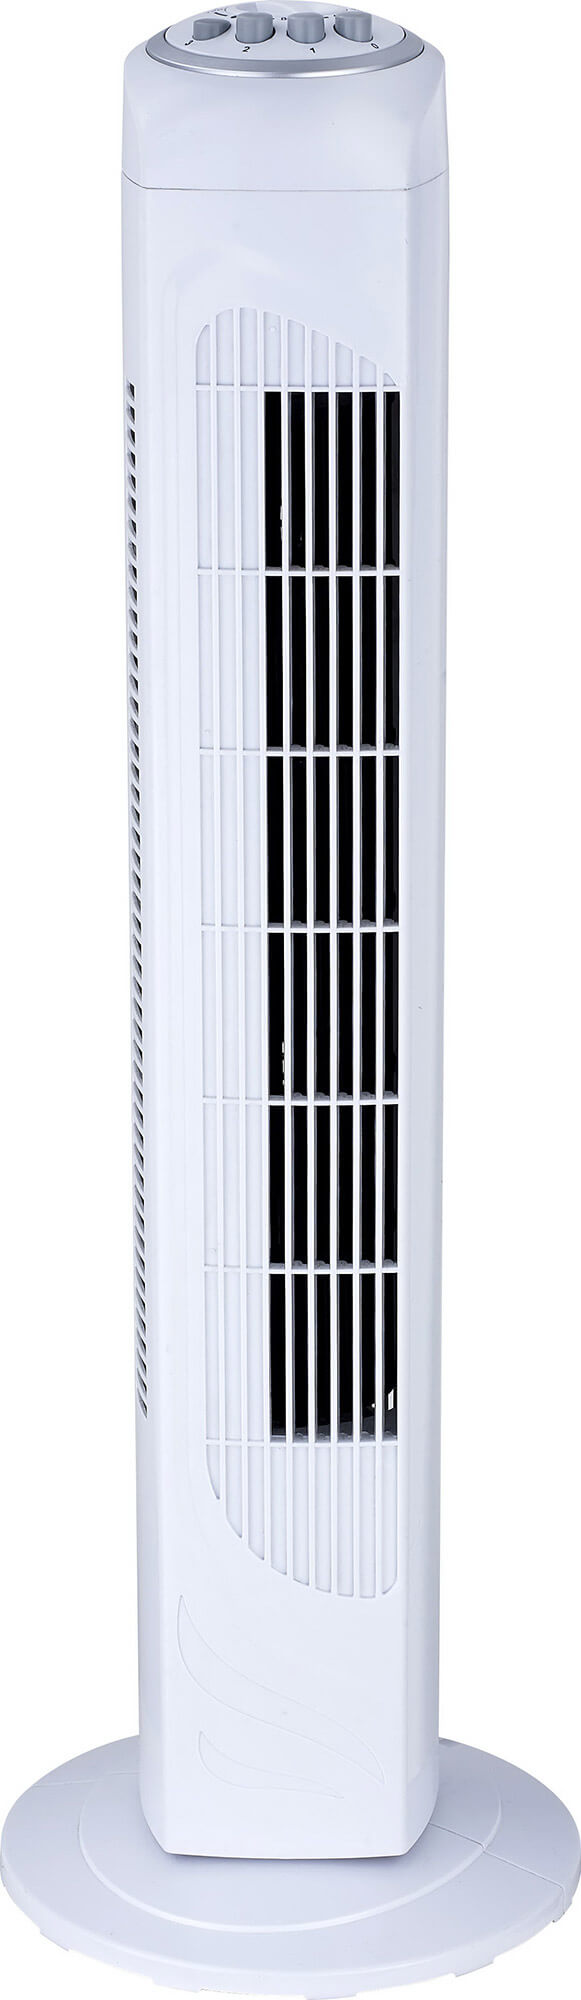 Ventilatore a Colonna Oscillante in ABS 50W 3 Velocità Bauer Bianco prezzo